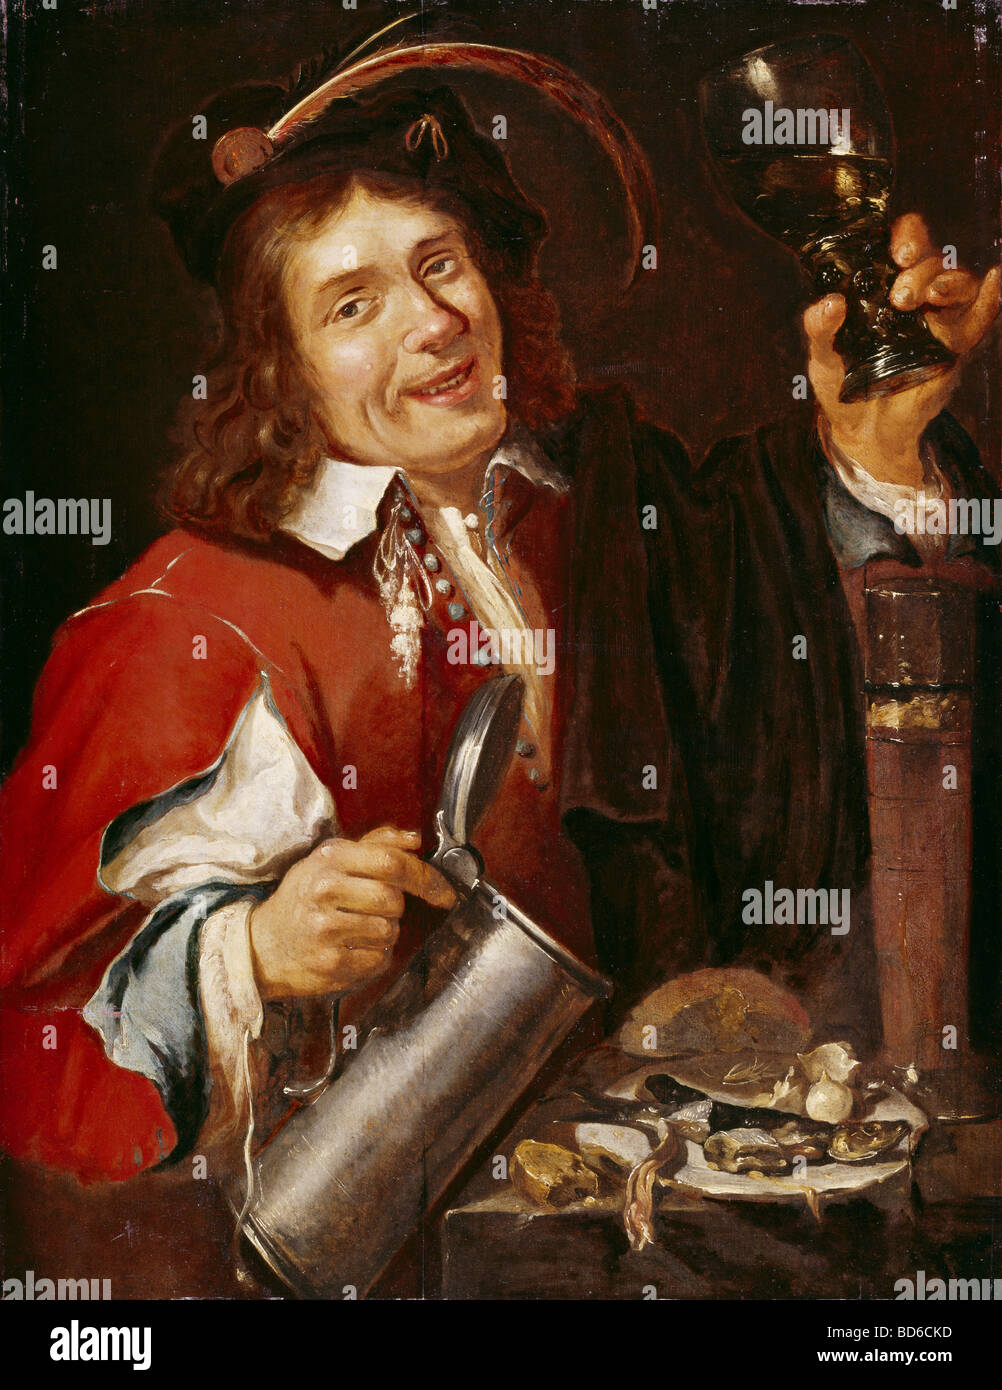 fine arts, Noort, Pieter van (1529 - circa 1650), painting, 'The Taste', series 'The Five Sences', Westfaelisches Landesmus Stock Photo